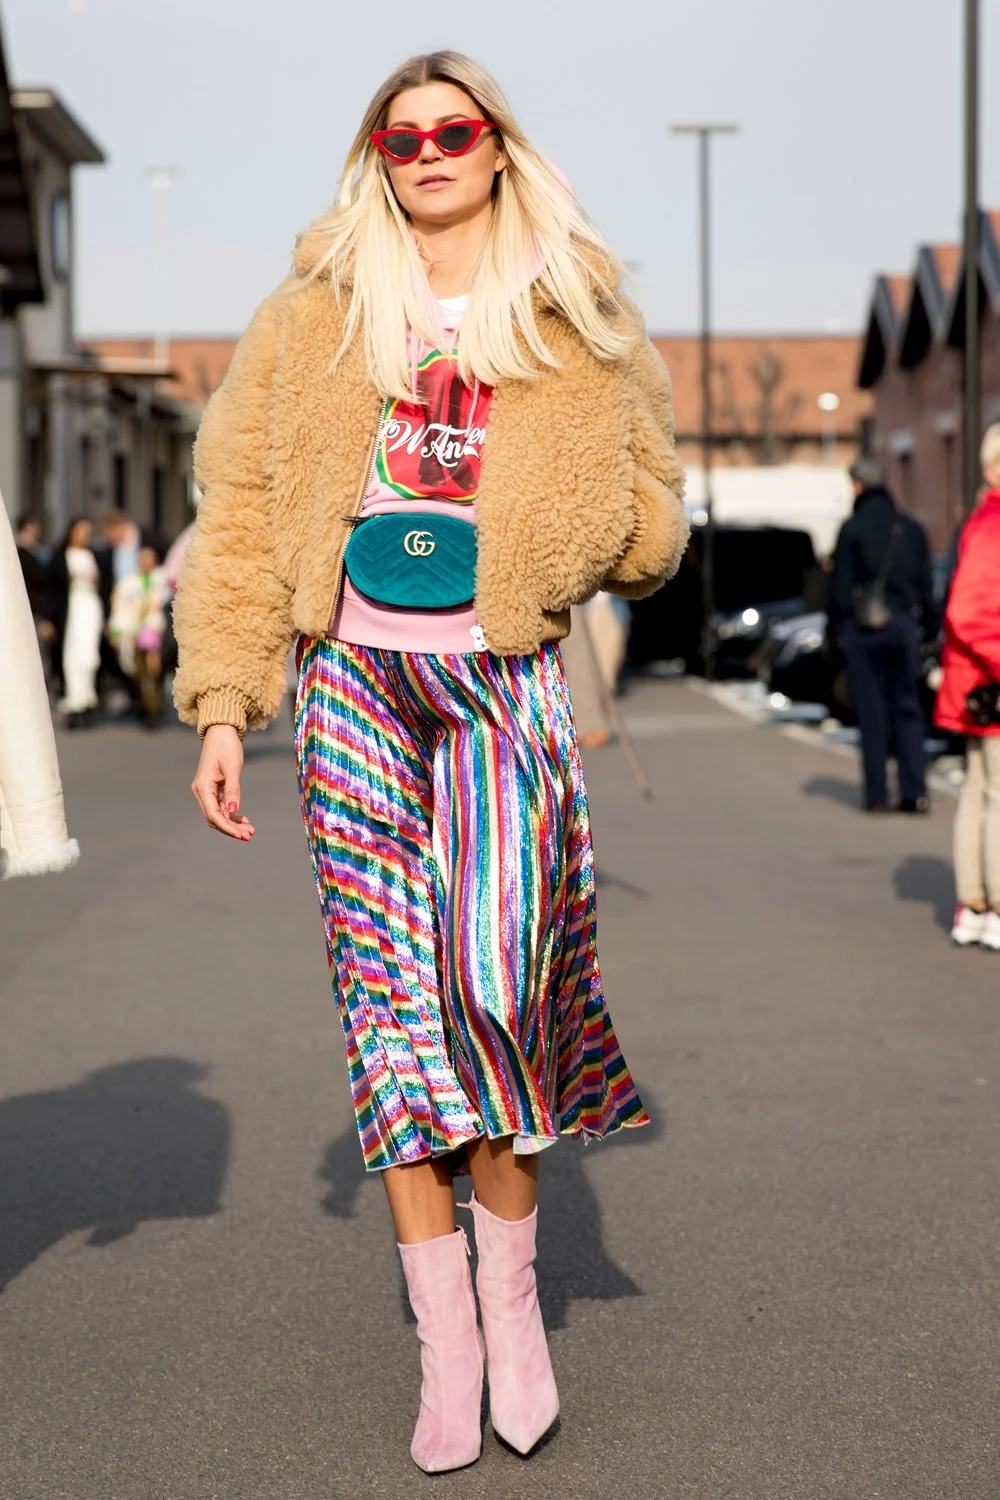 Милан в тренде: как одеваются звезды street style на модные показы - фото 371403